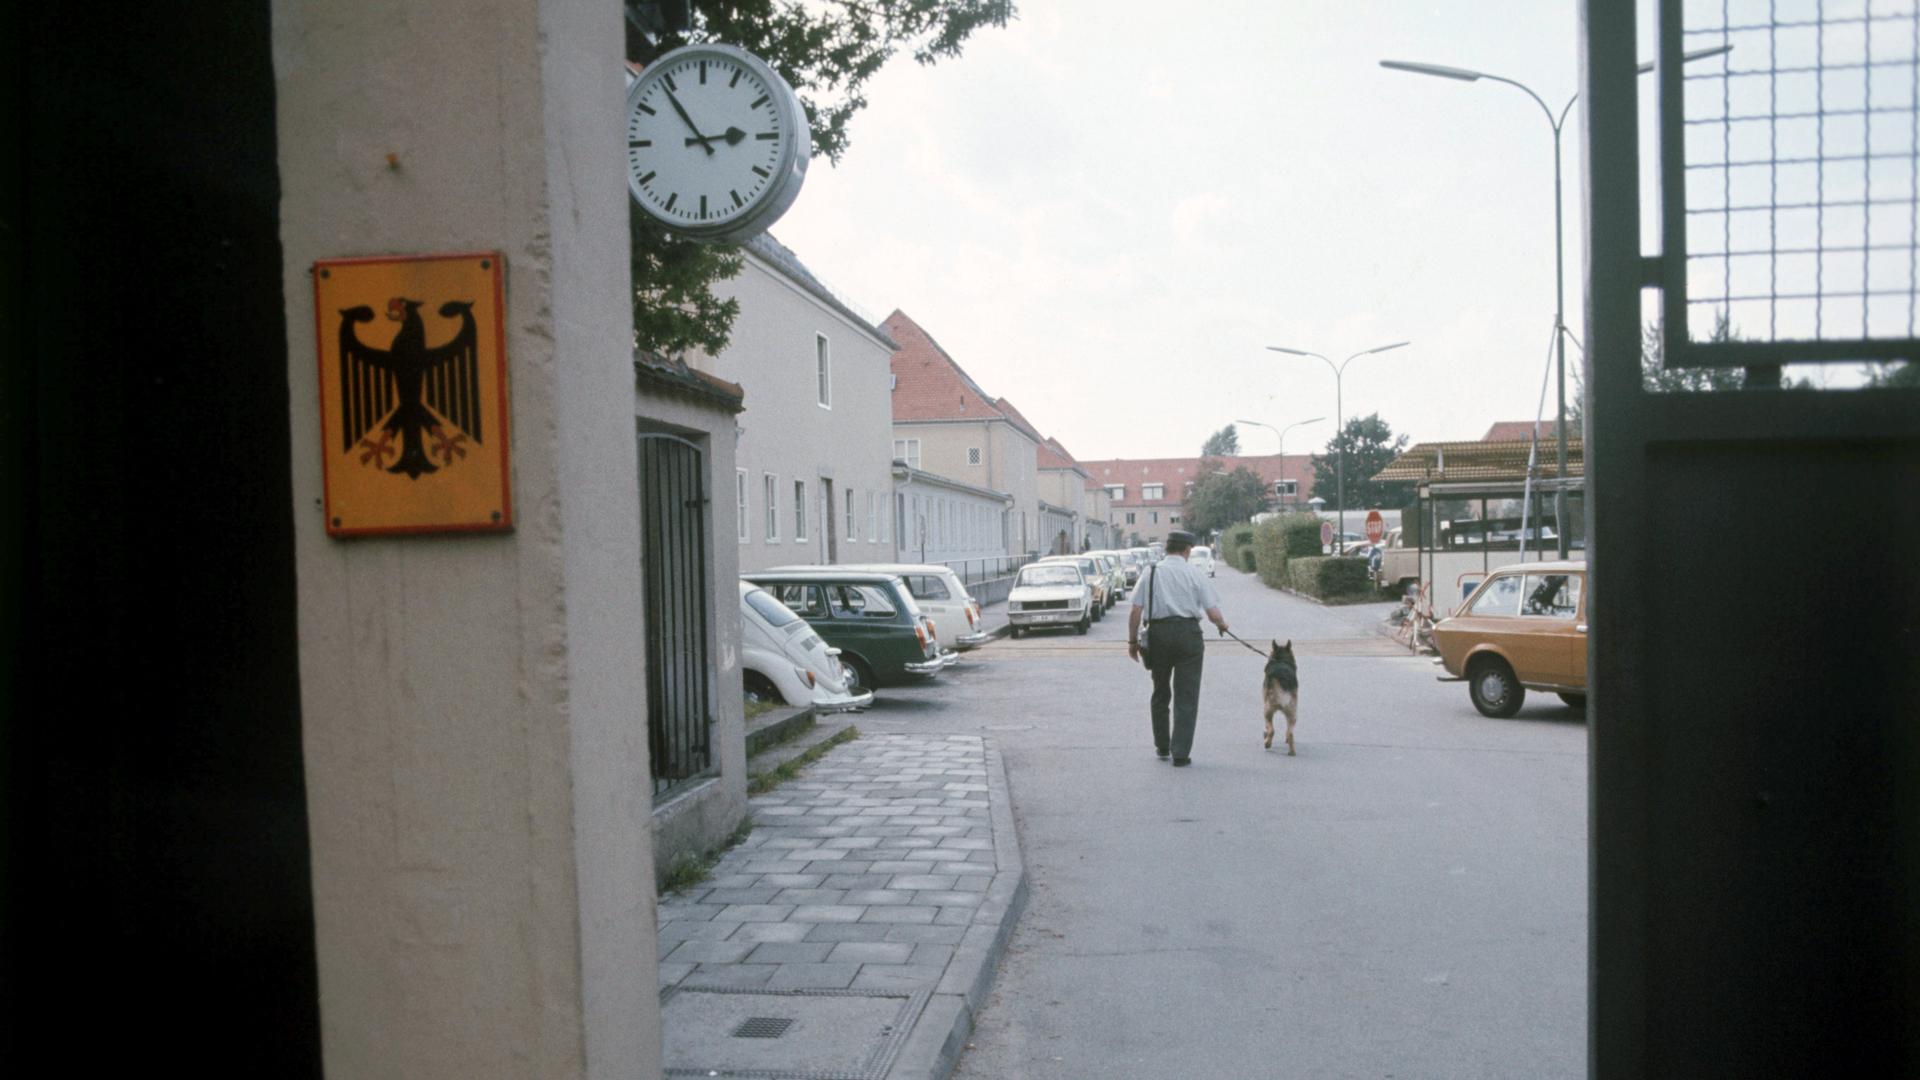 Durch ein Eingangstor sieht man einen Polizeibeamten mit Hund von hinten auf einer Aufnahme des Gelände des Bundesnachrichtendienstes in Pullach um 1960/1970.